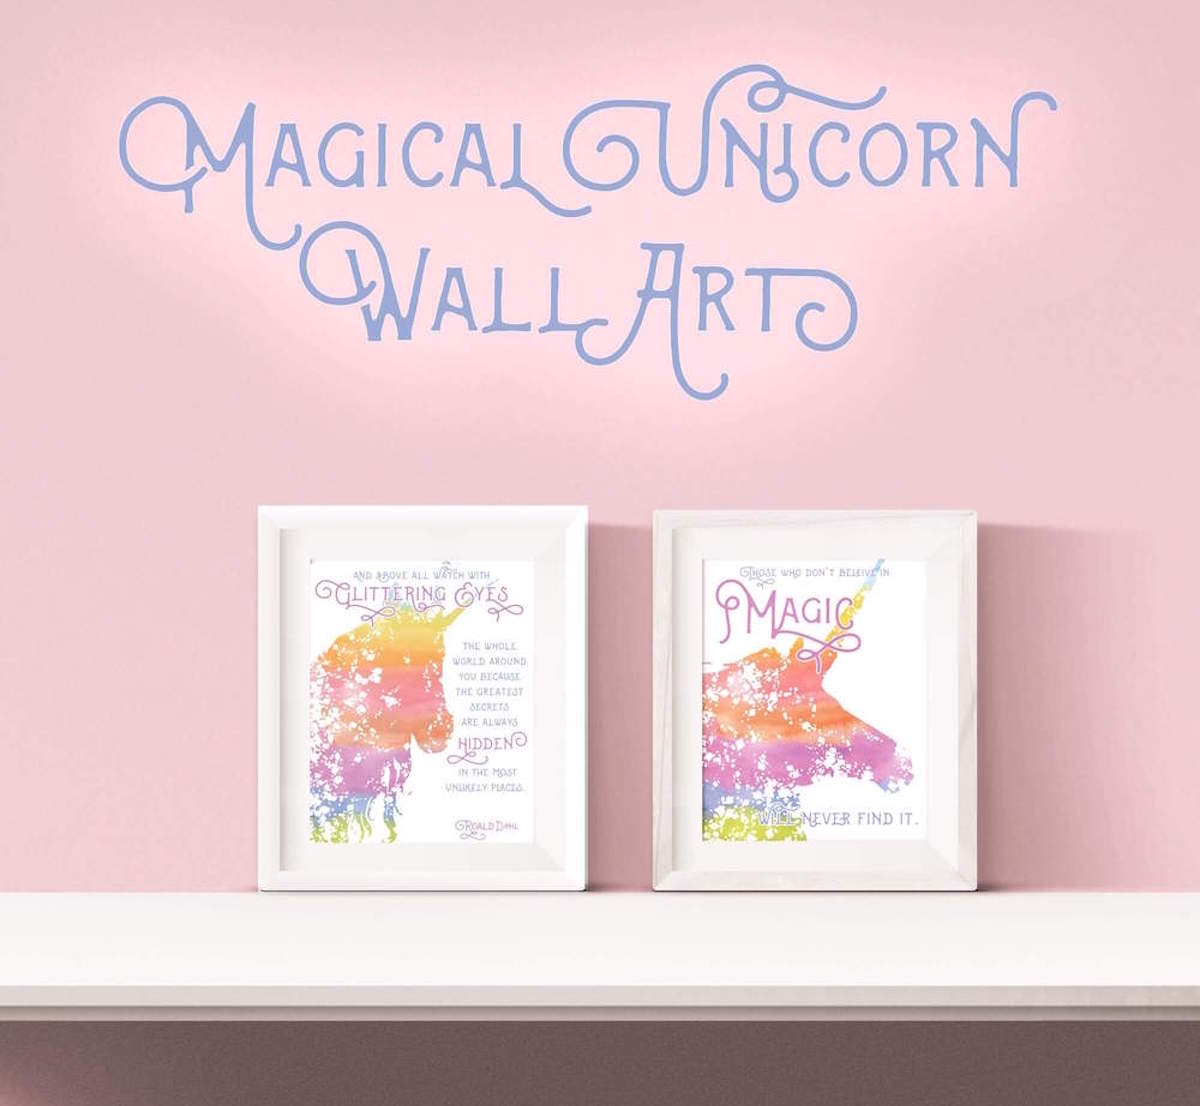 free unicorn wall art